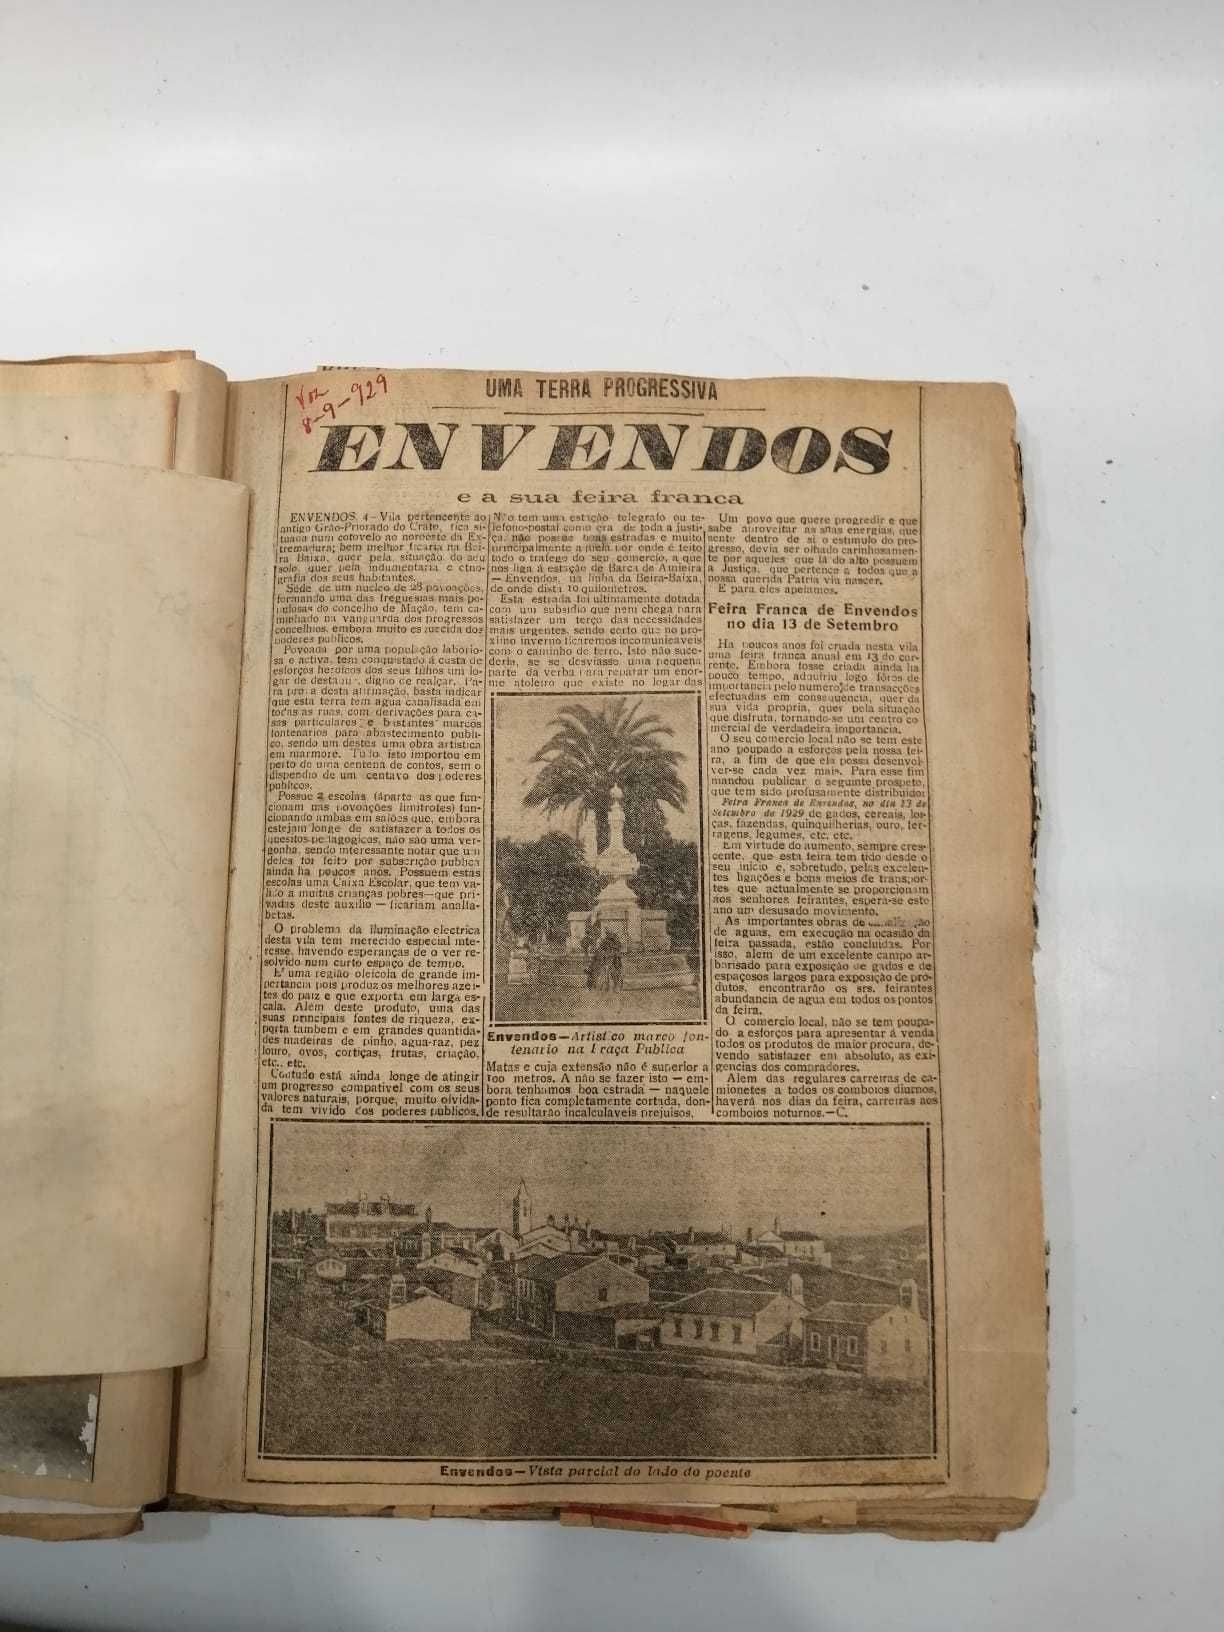 Mação - Envendos -Santarém-Documentos Históricos de 1920